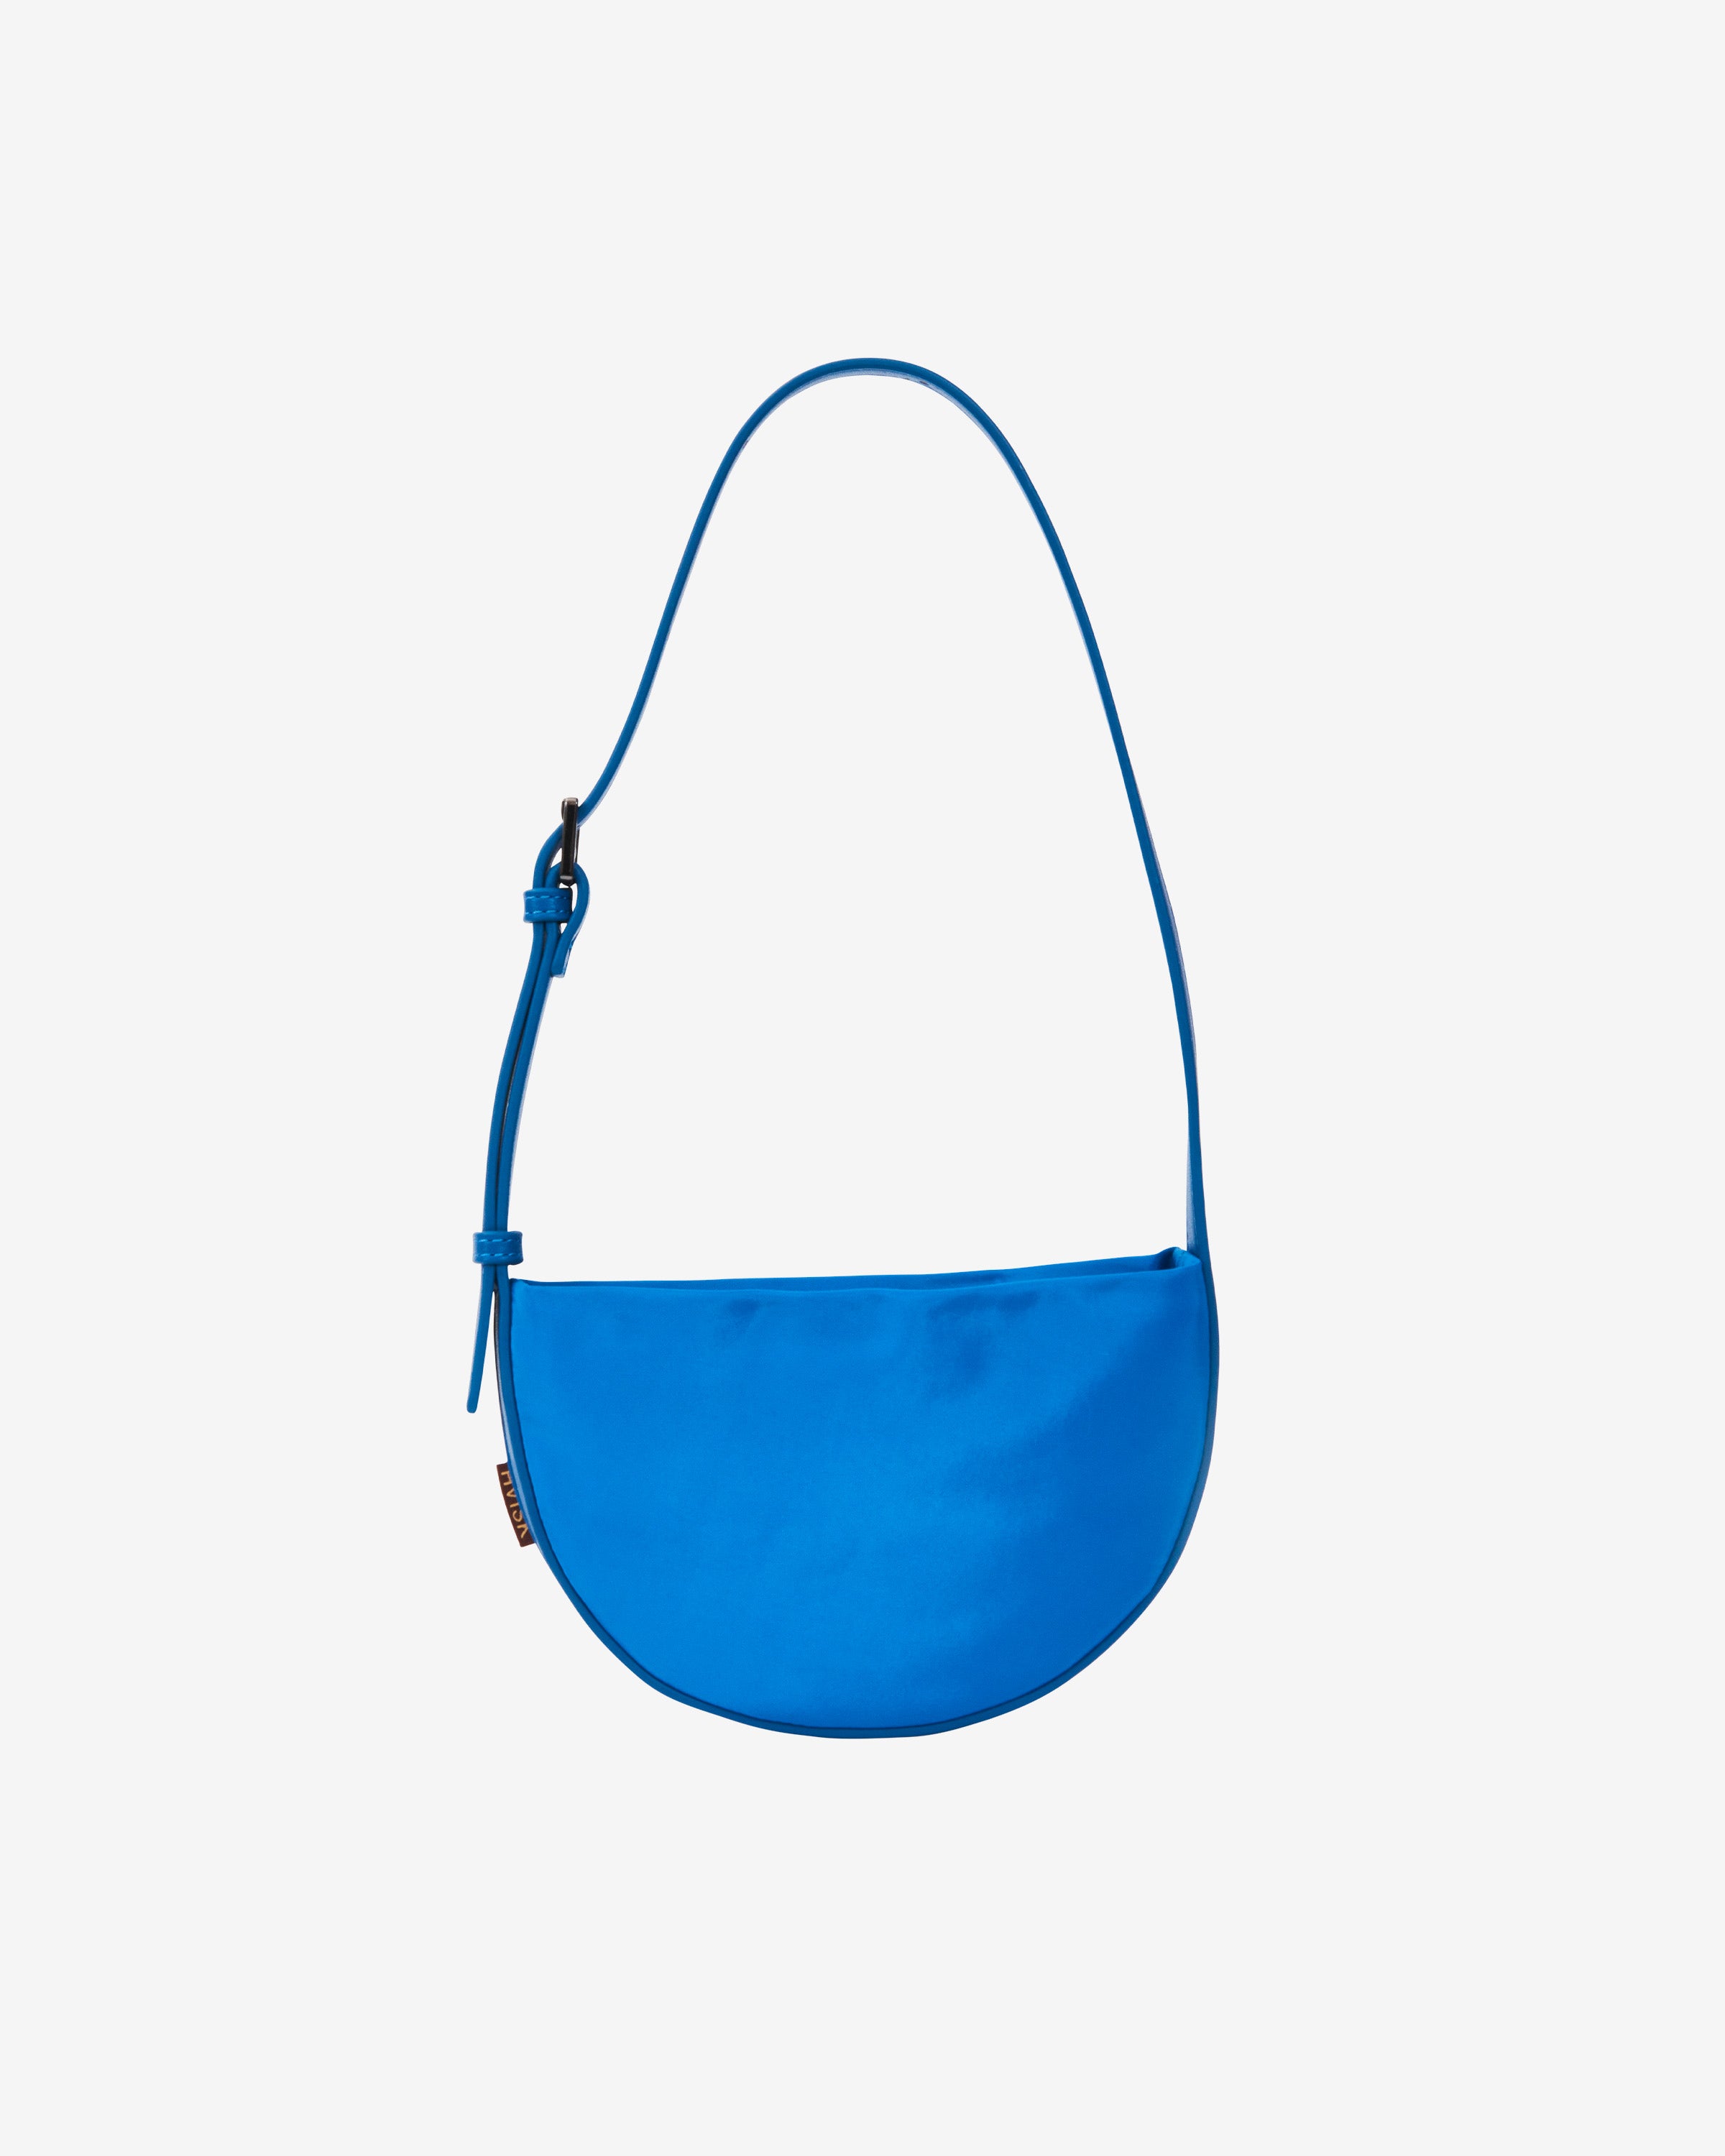 HVISK HALO MATTE TWILL Handbag 406 Wintry Blue